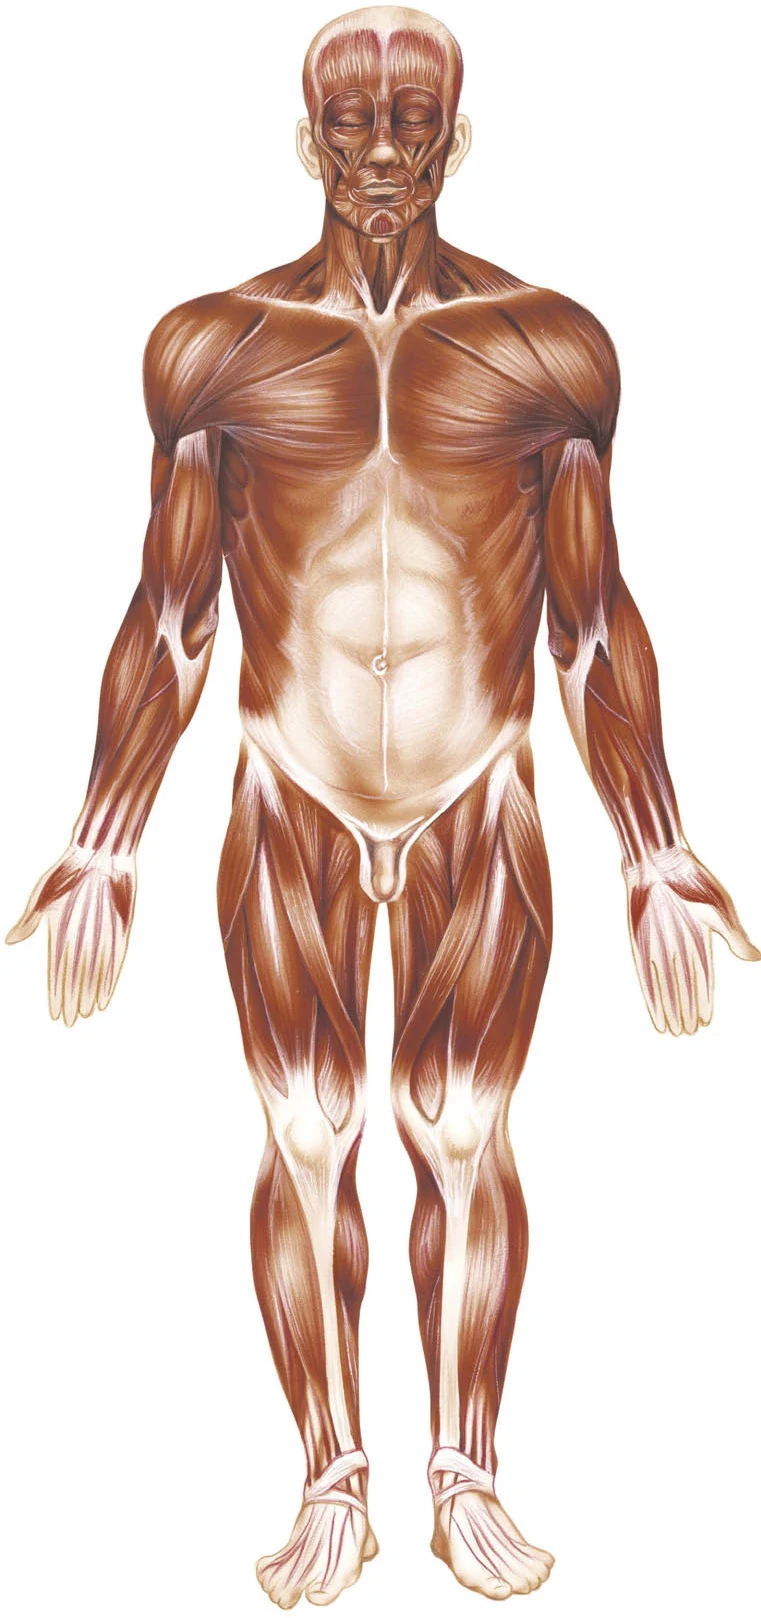 Position anatomique de référence.